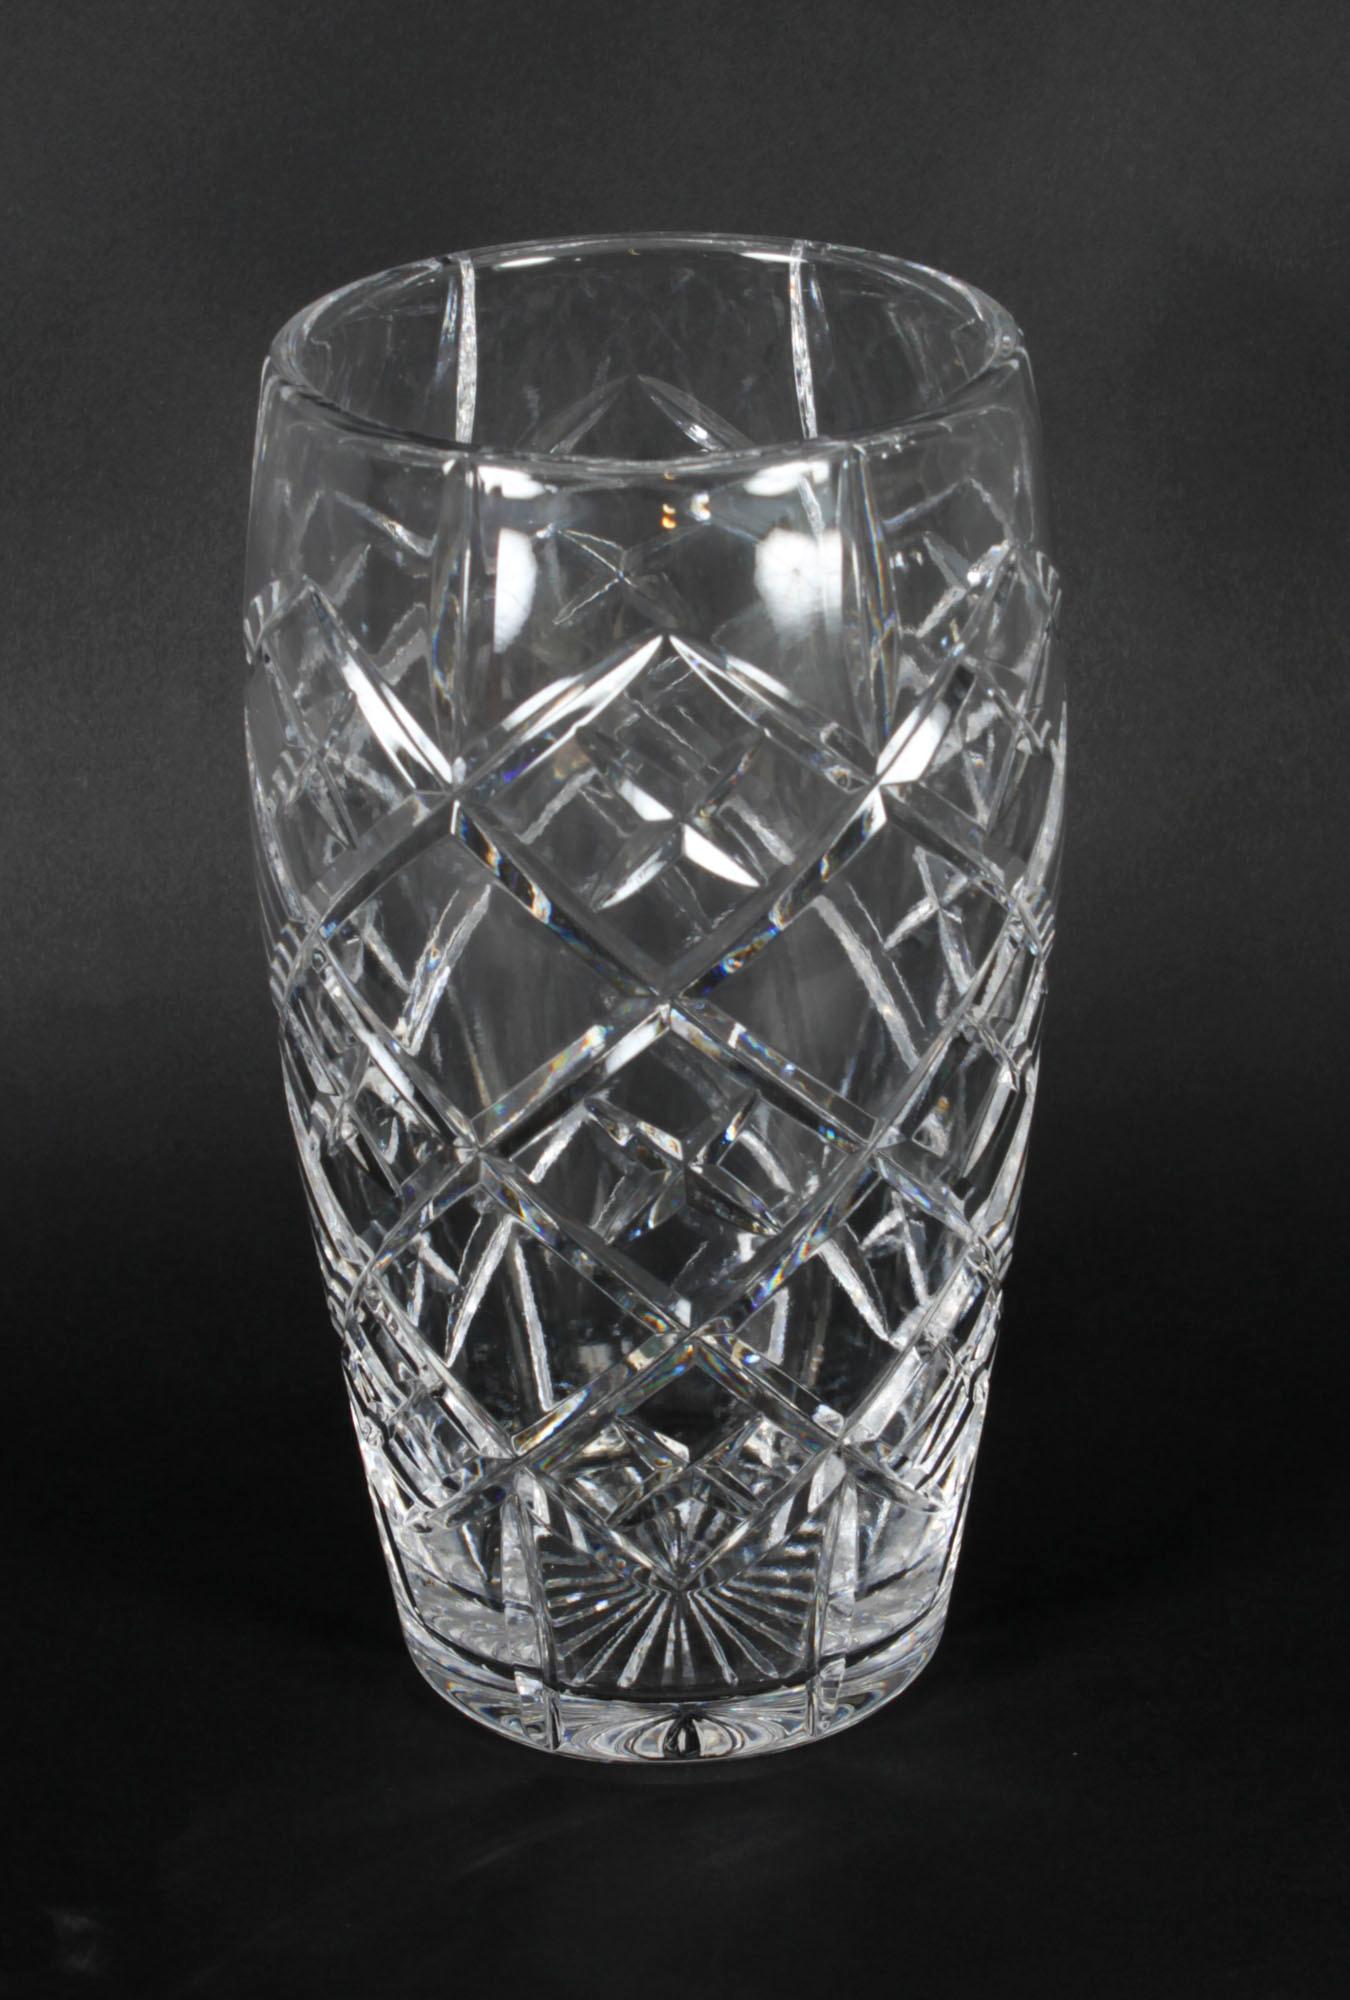 Dies ist eine prächtige englische antike Vase aus geschliffenem Kristall, ca. 1900 datiert.
 
Diese wunderbare zylindrische Vase ist ideal für fast jedes Blumenarrangement, während die Vase selbst Stabilität und ein angenehmes Gewicht aufweist. Sie